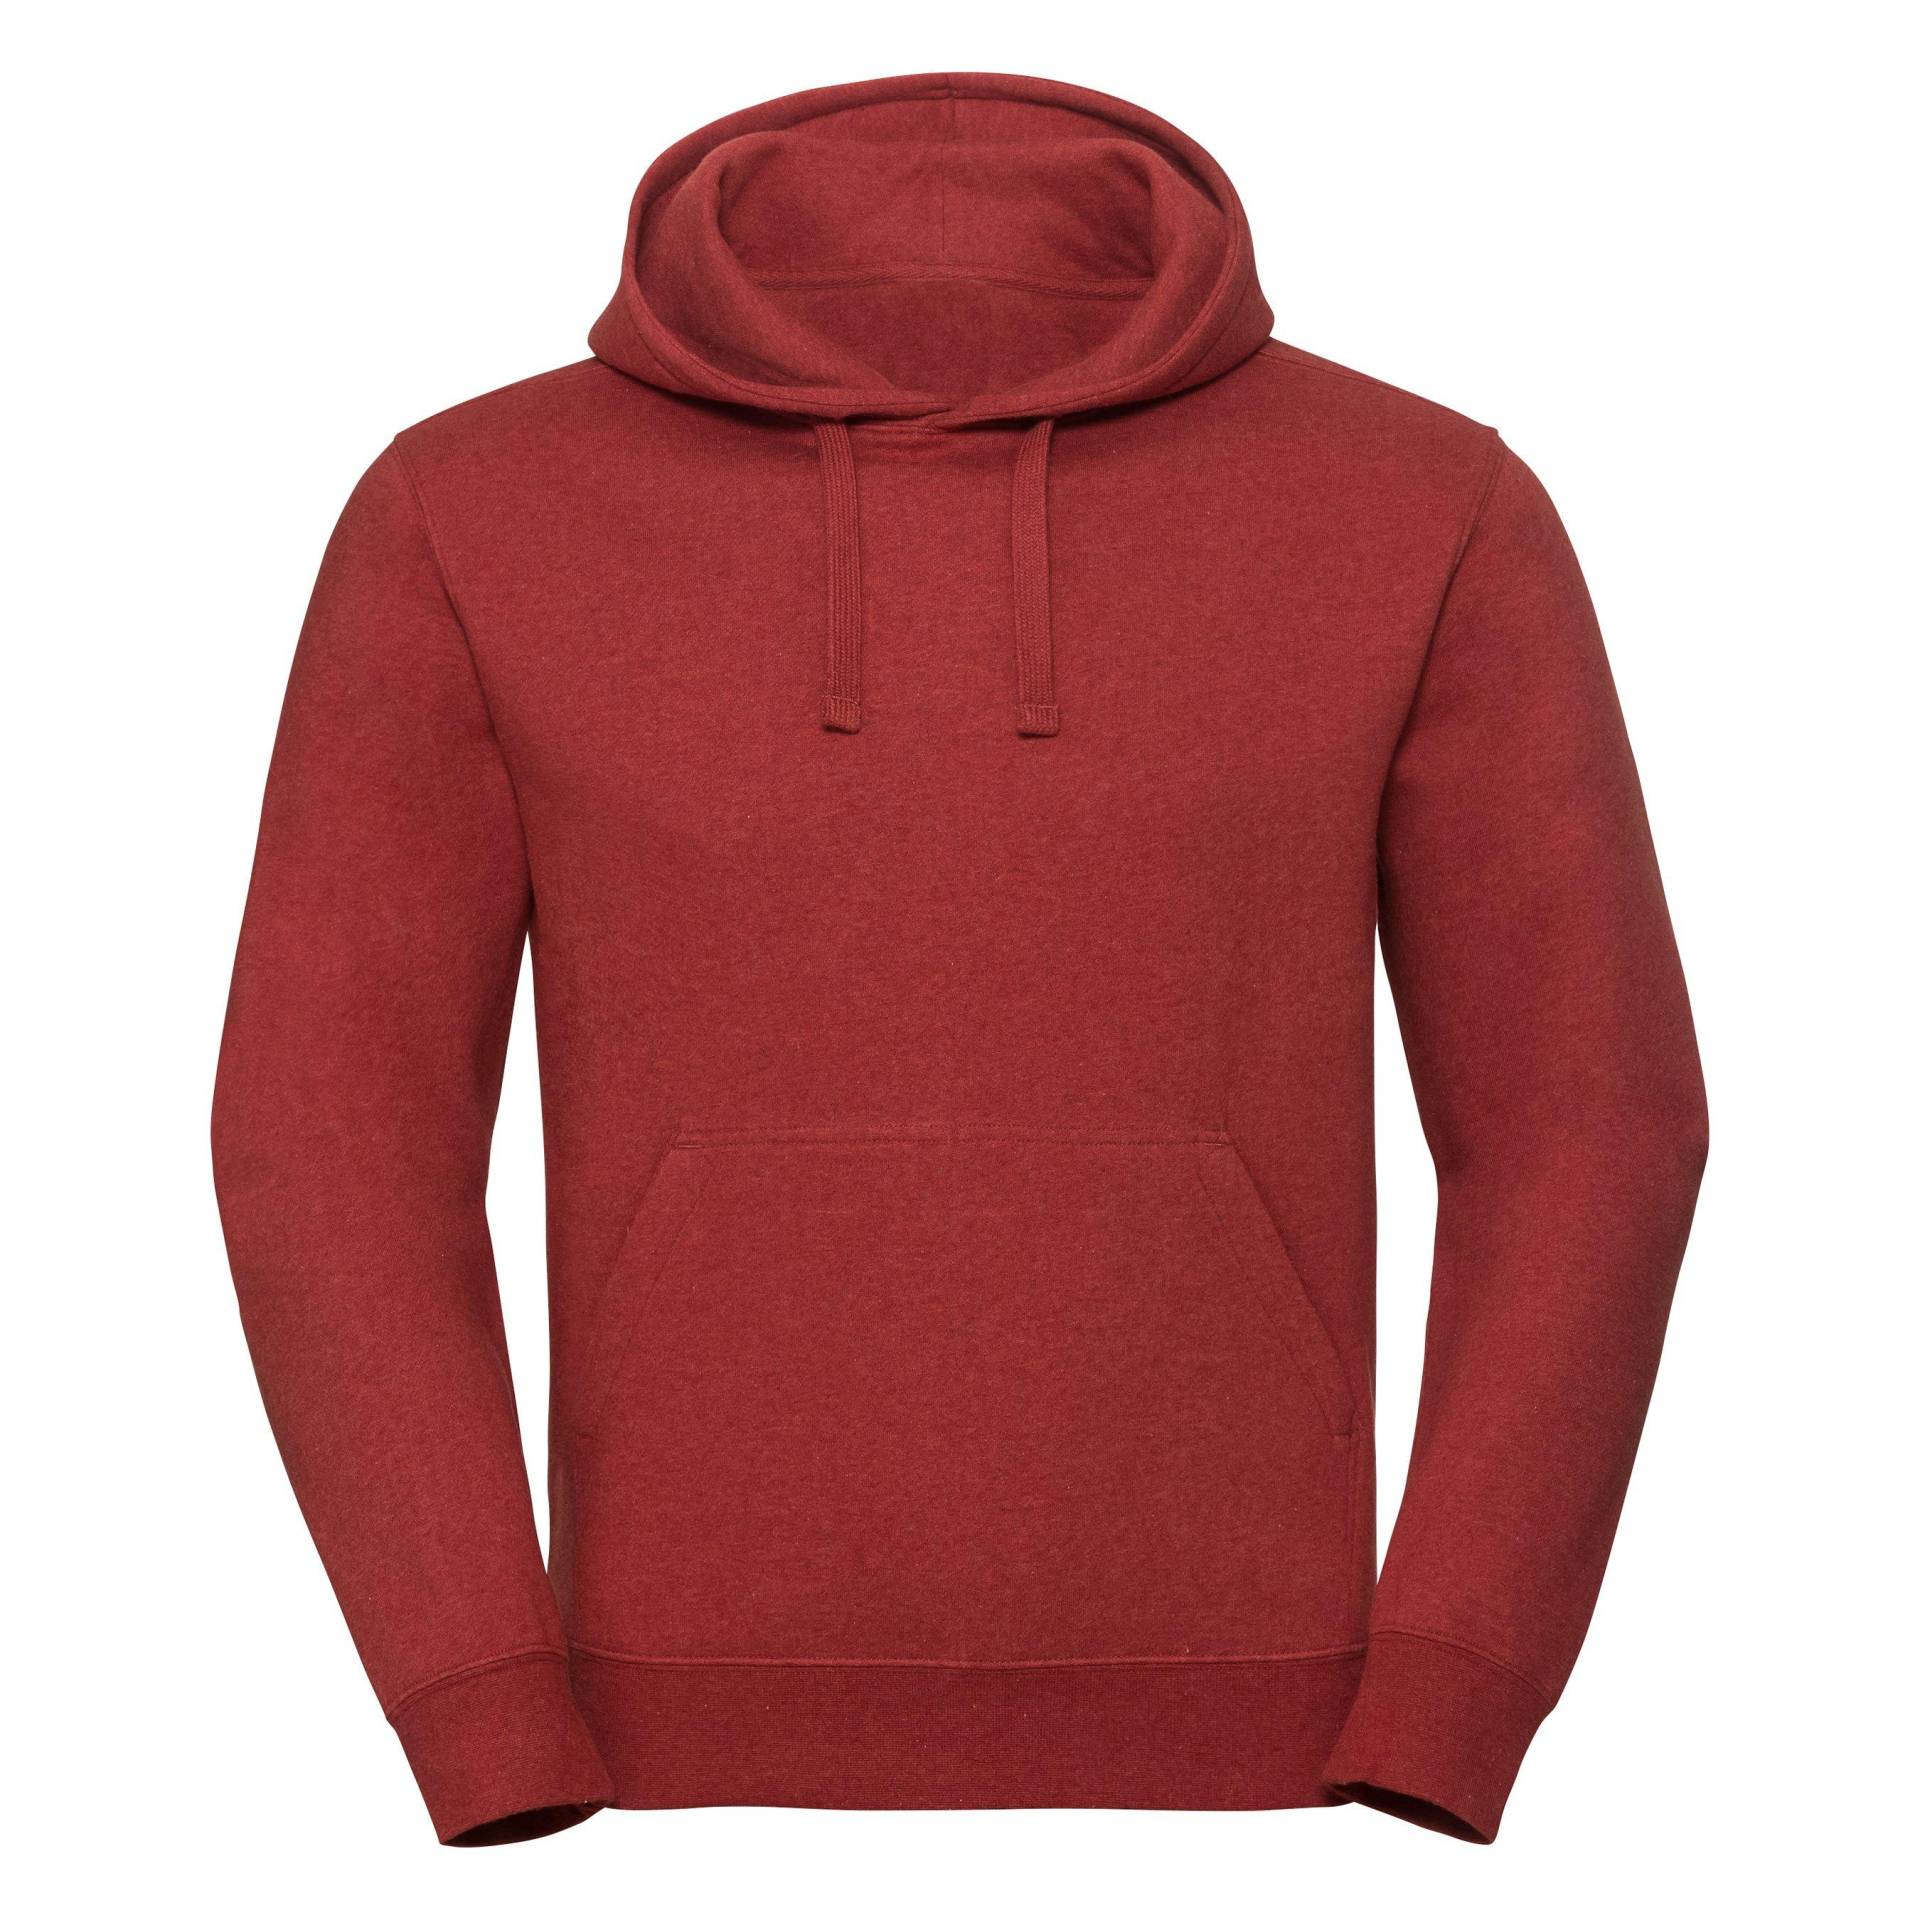 Authentic Sweatshirt Mit Kapuze Damen Rot Bunt S von Russell